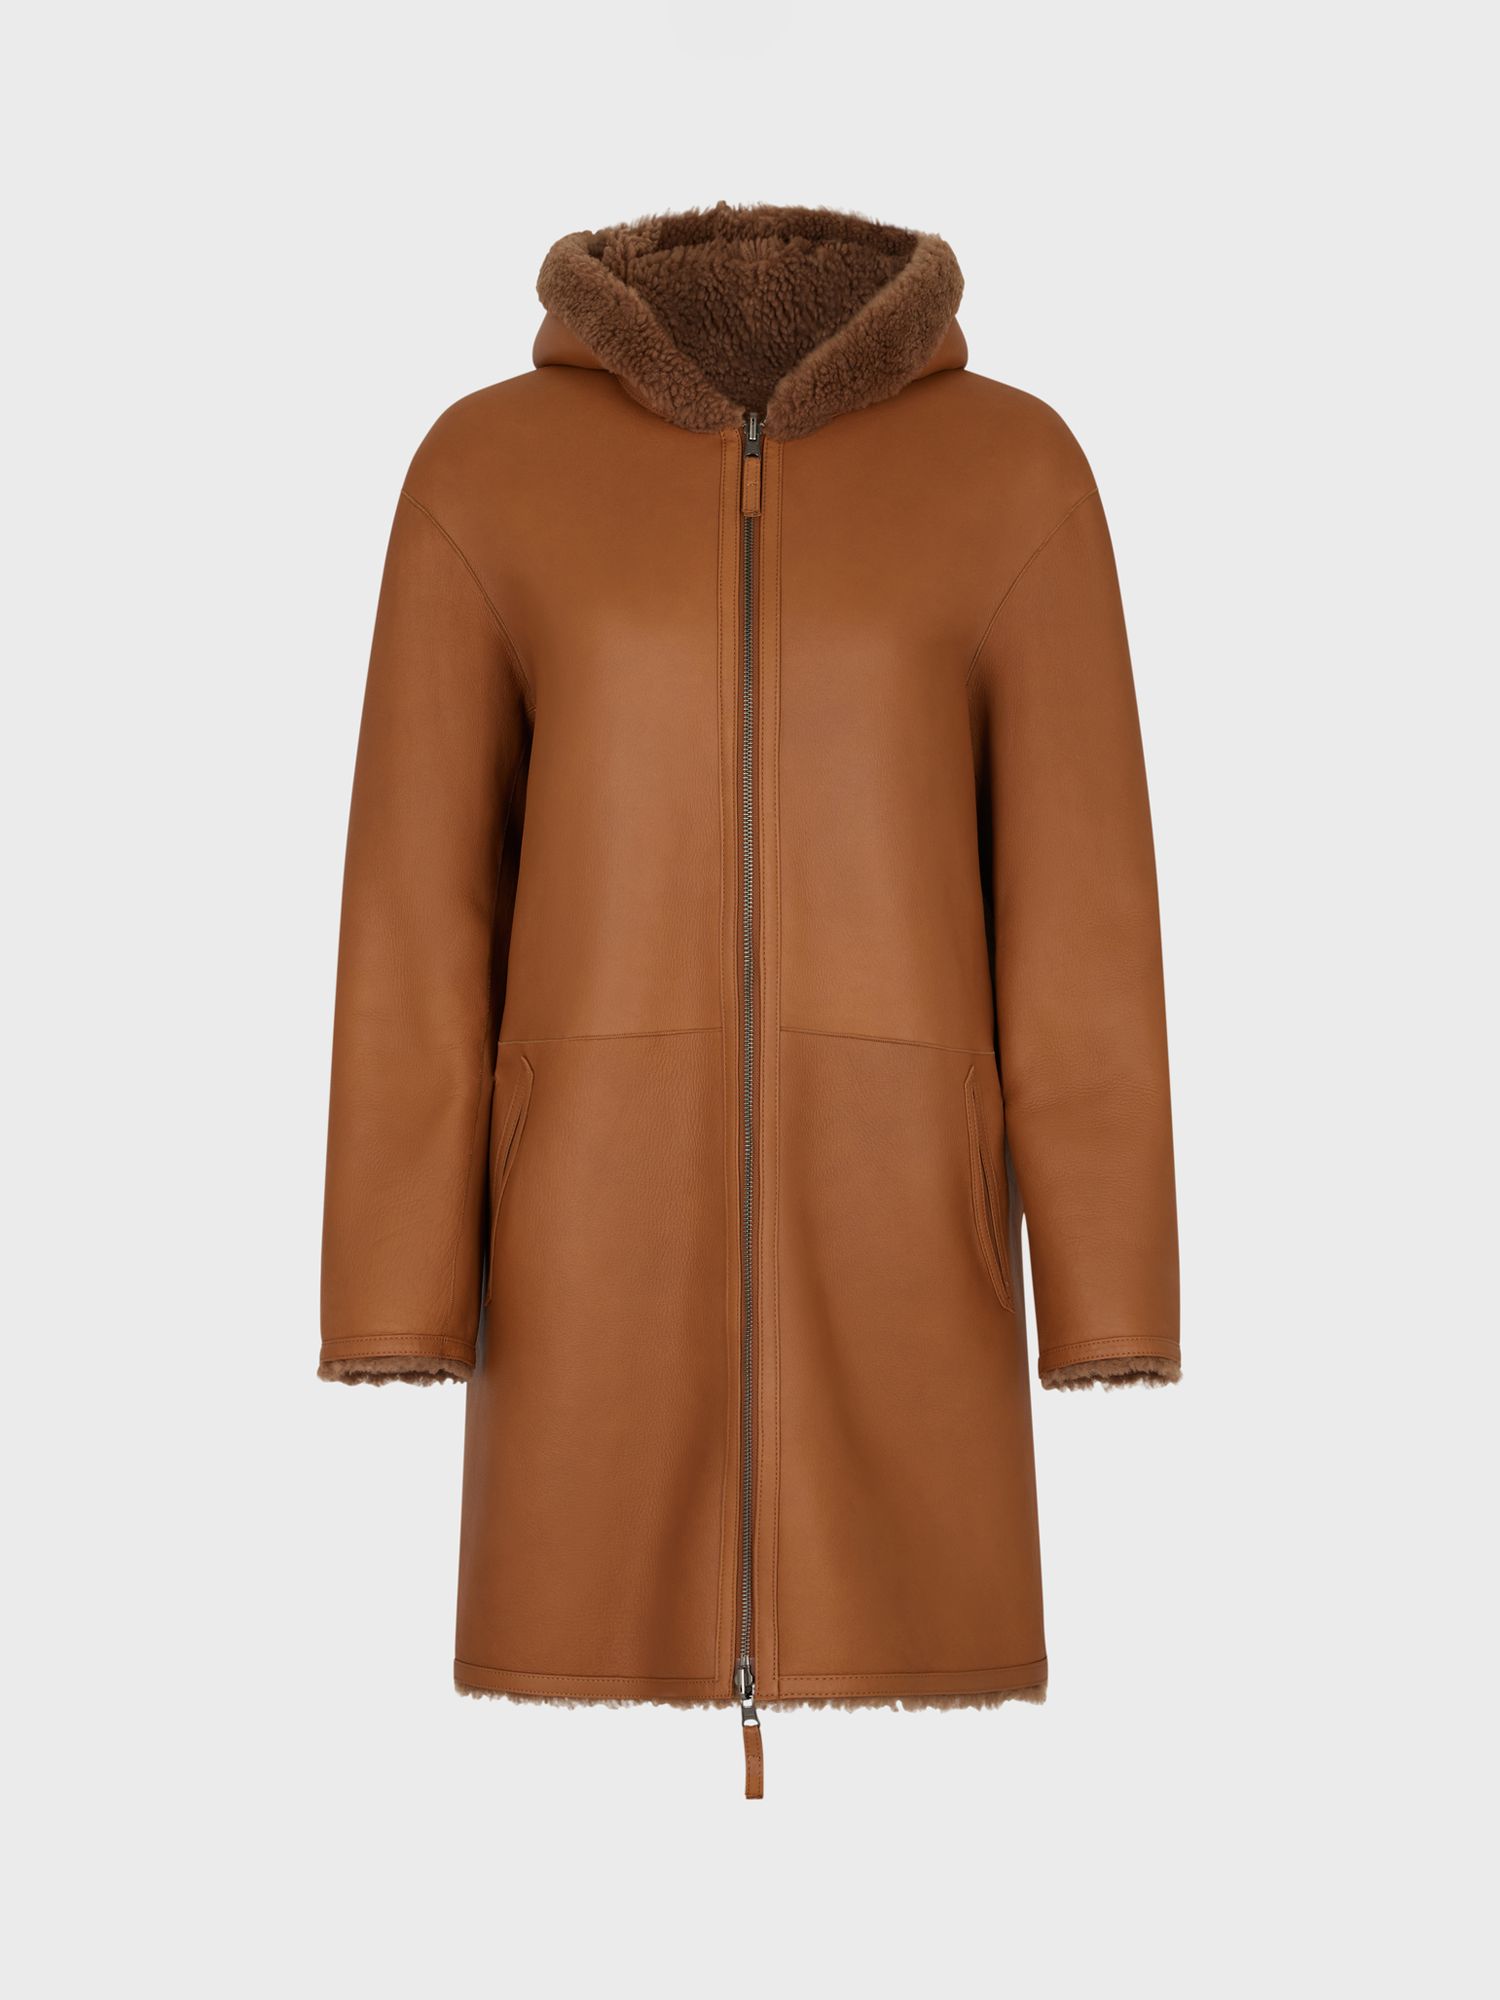 Women's Brown Faux Fur Coats